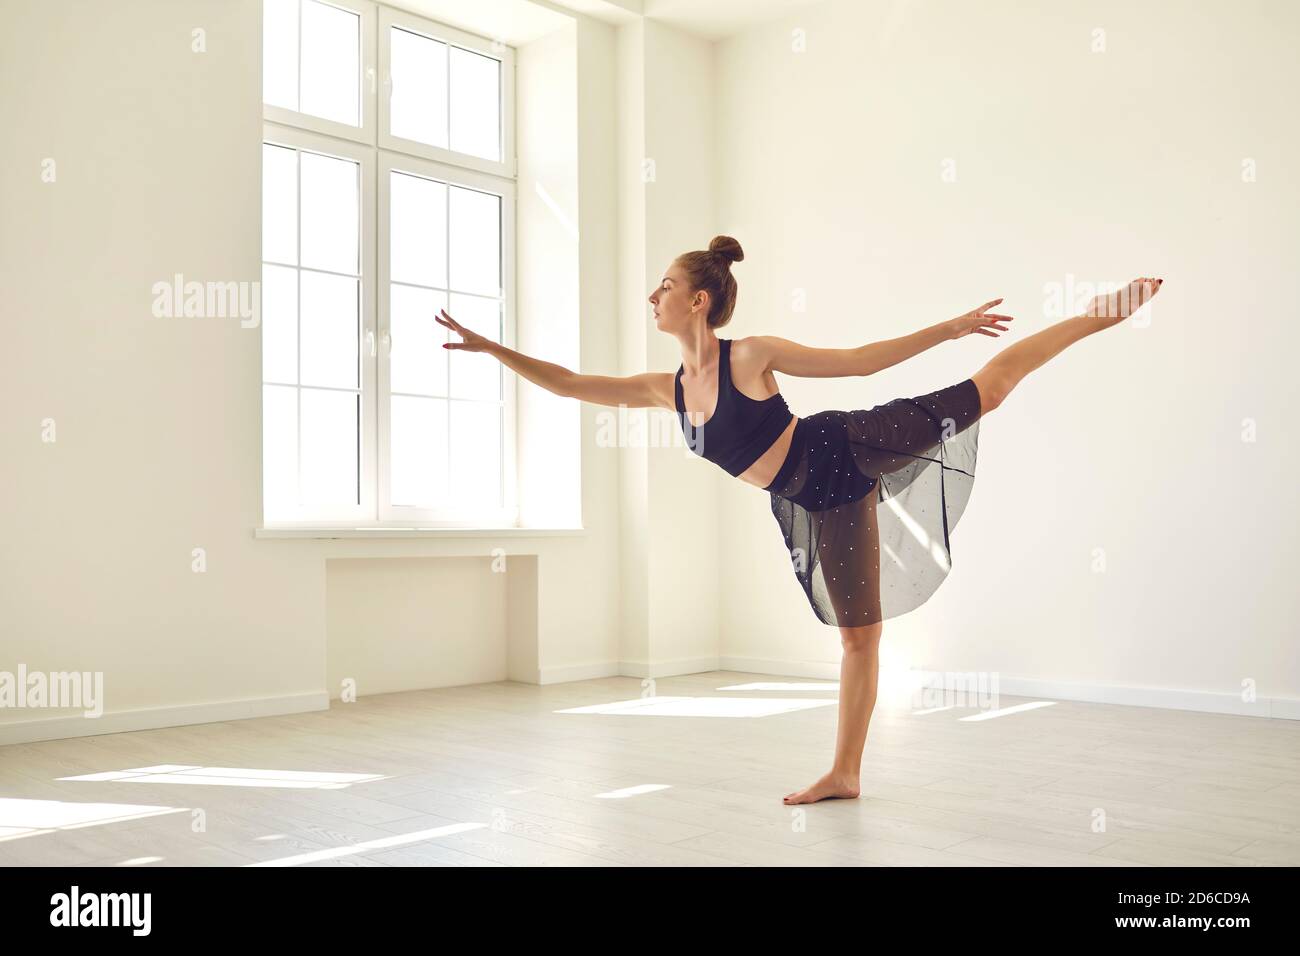 Mädchen stehen mit ausgestrecktem Bein und üben klassisches Ballett Oder moderner Tanz im Studio Stockfoto